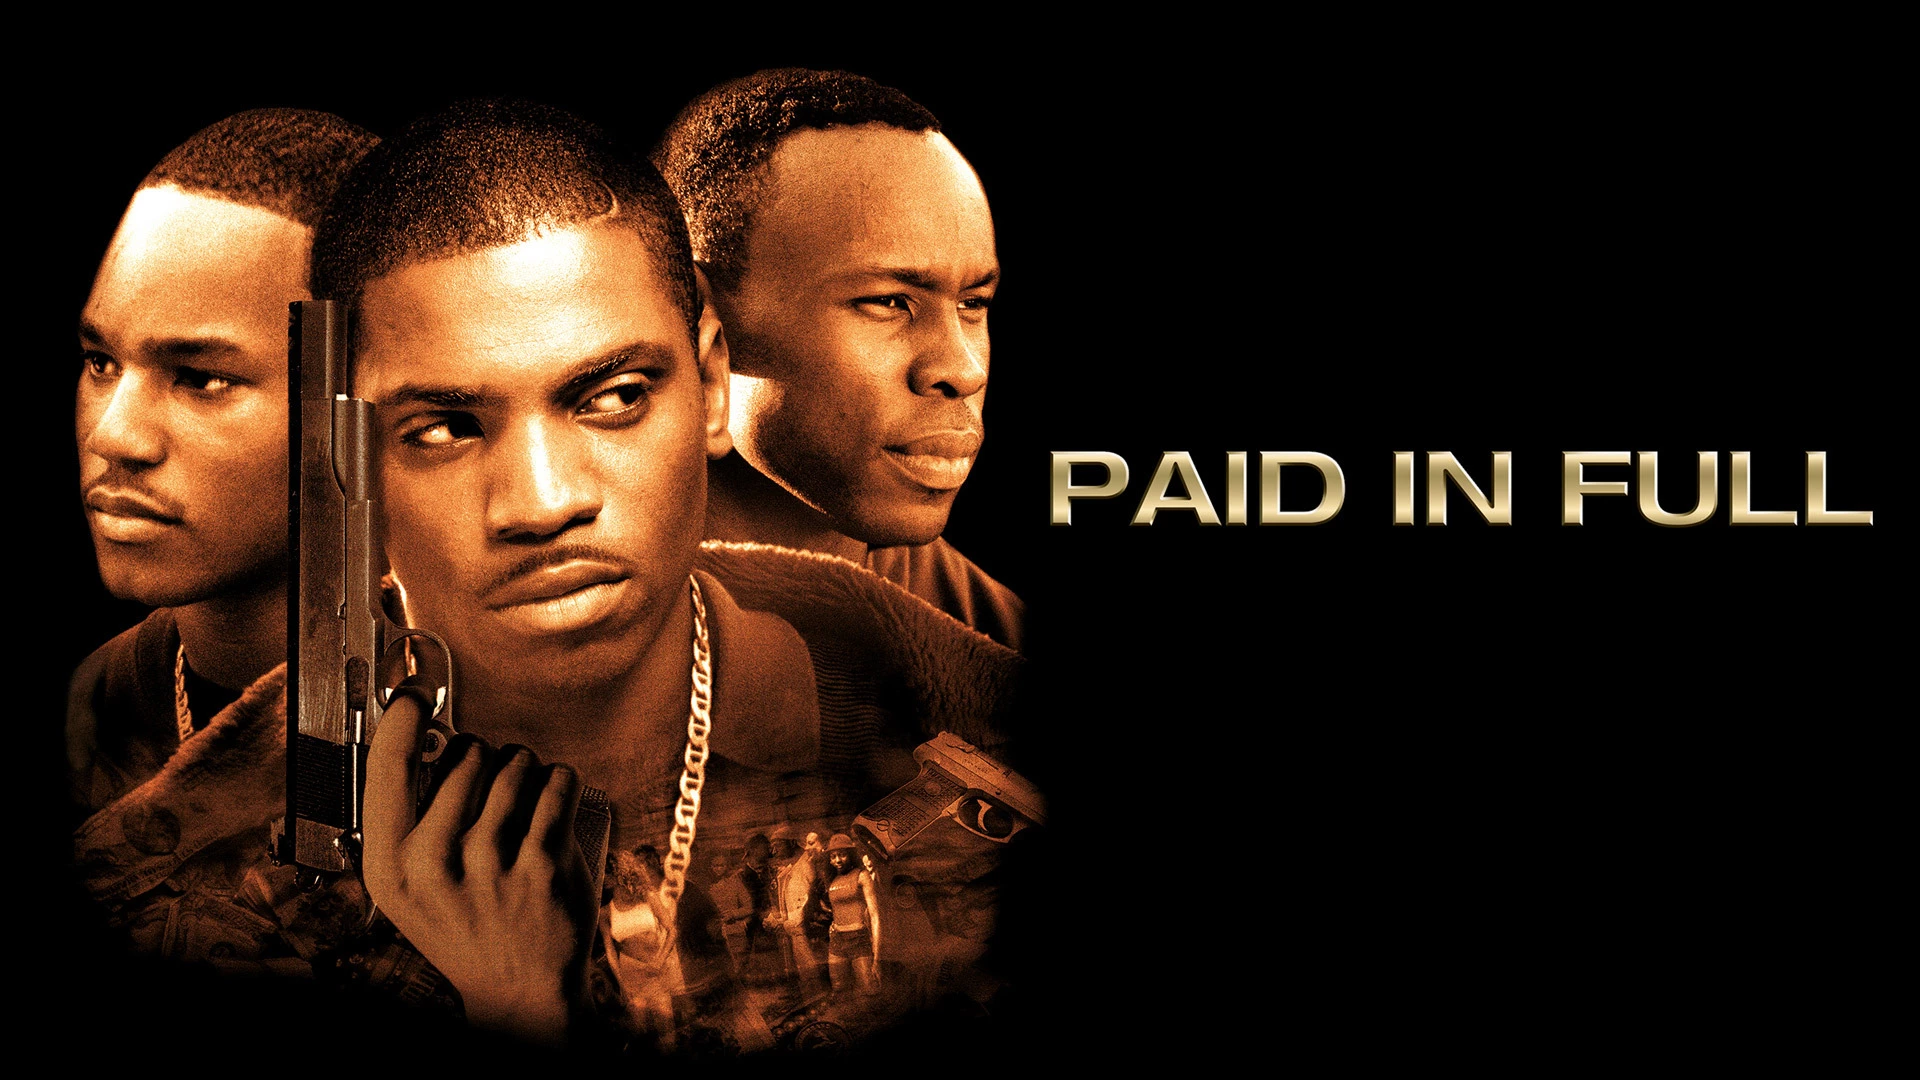 Paid in Full (2002) - movies like Boyz n the hood